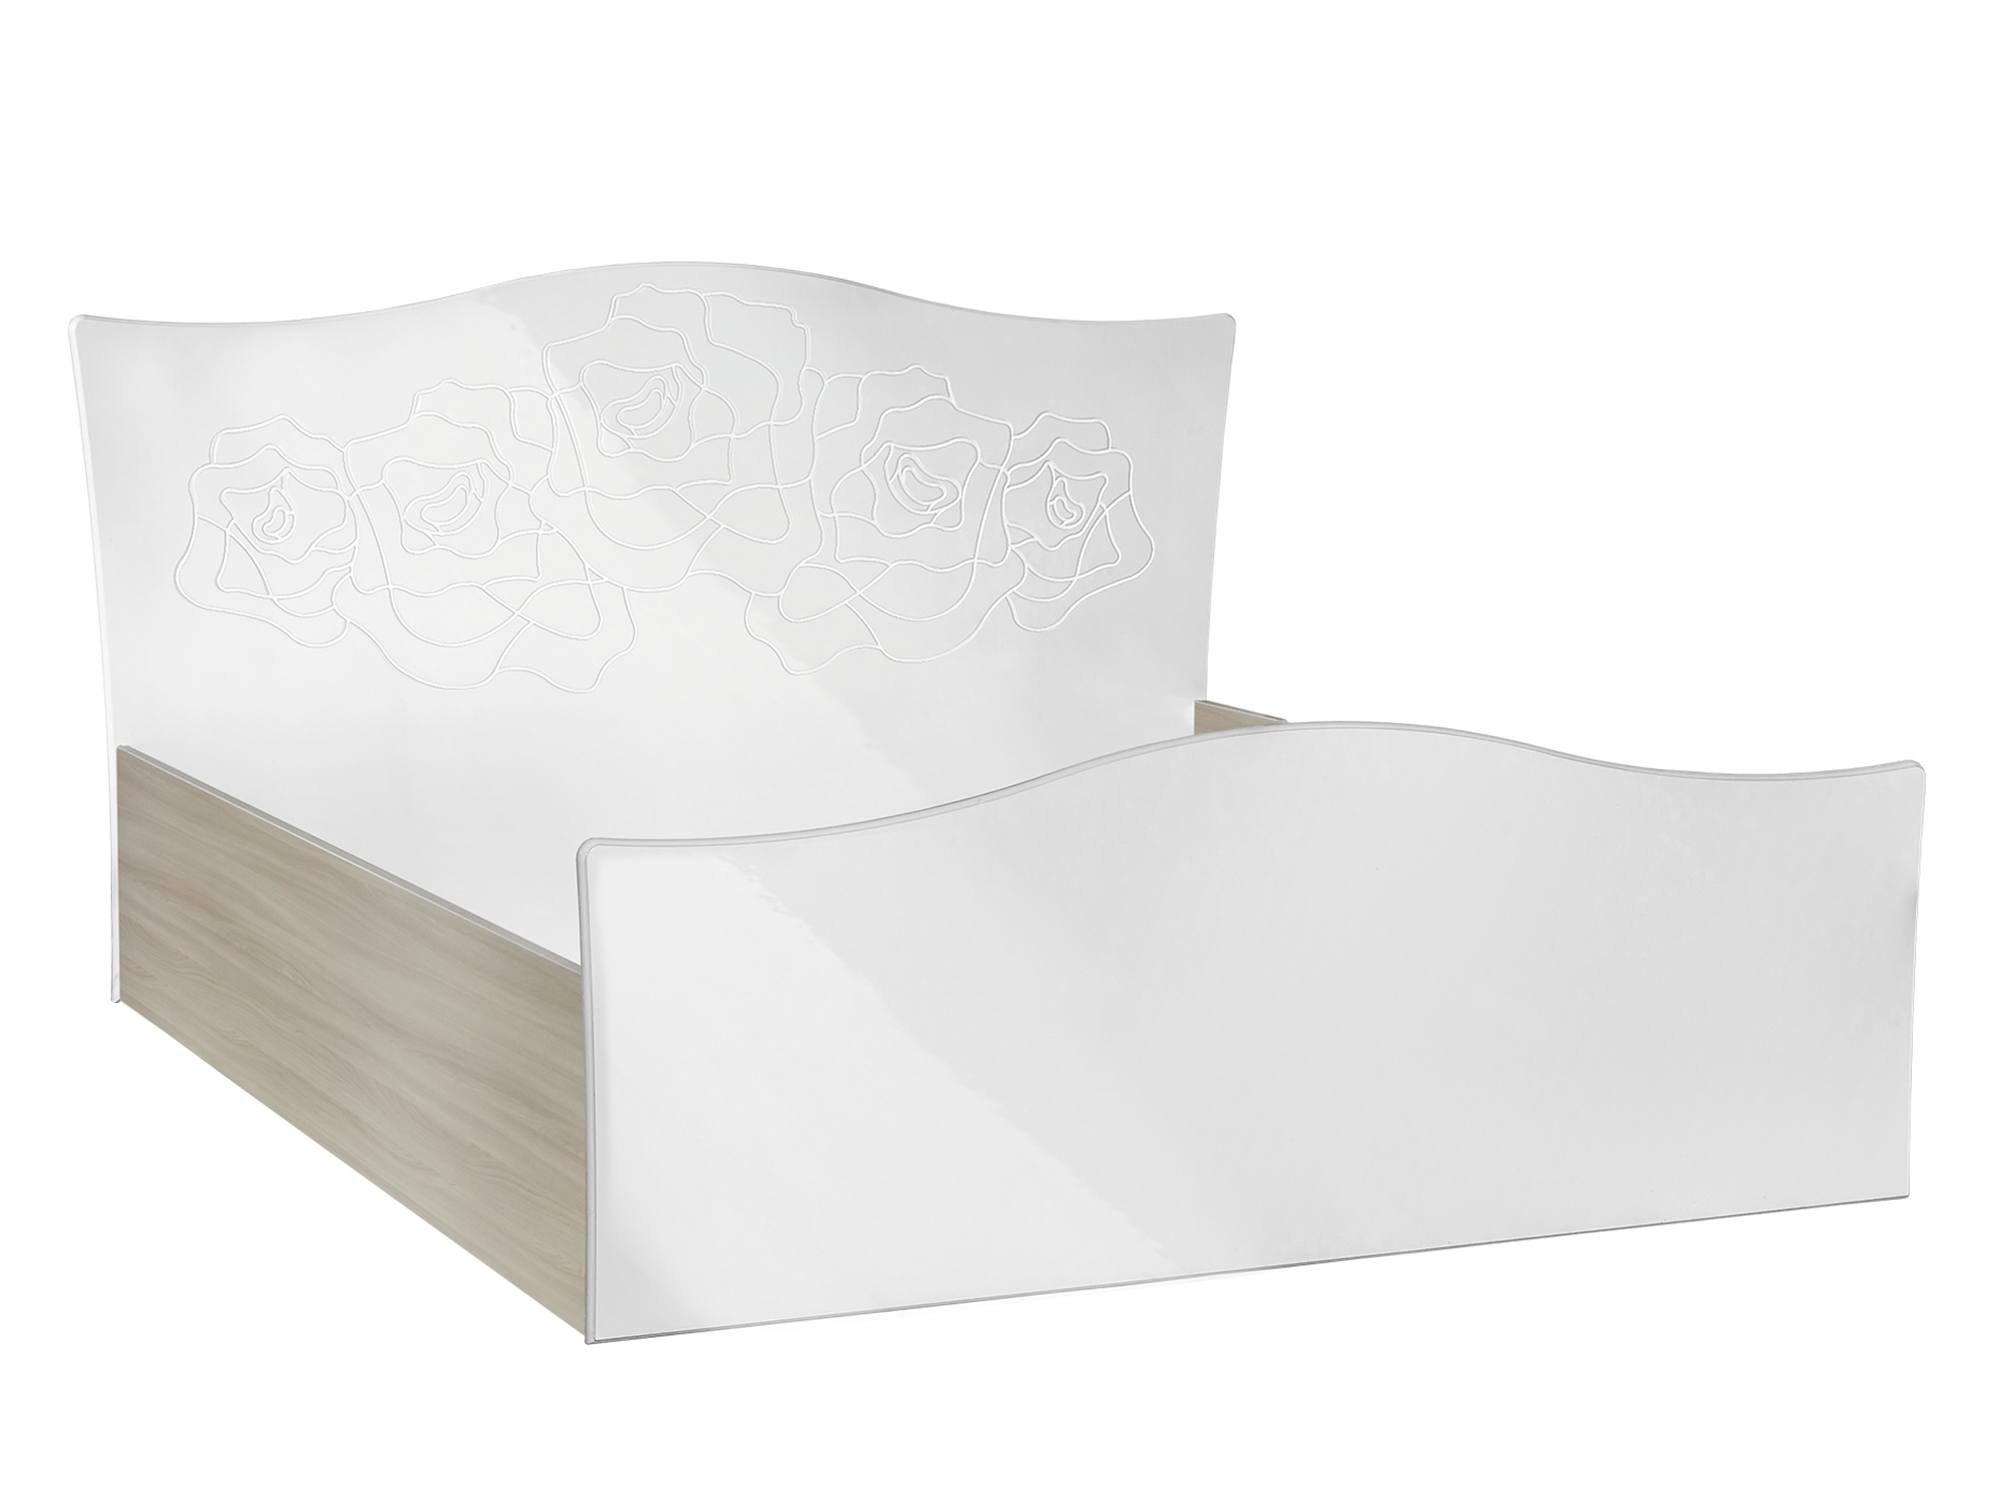 Кровать Глория (160х200) Белый глянец, Белый, Бежевый, МДФ, ЛДСП кровать глория 160х200 белый глянец белый бежевый мдф лдсп